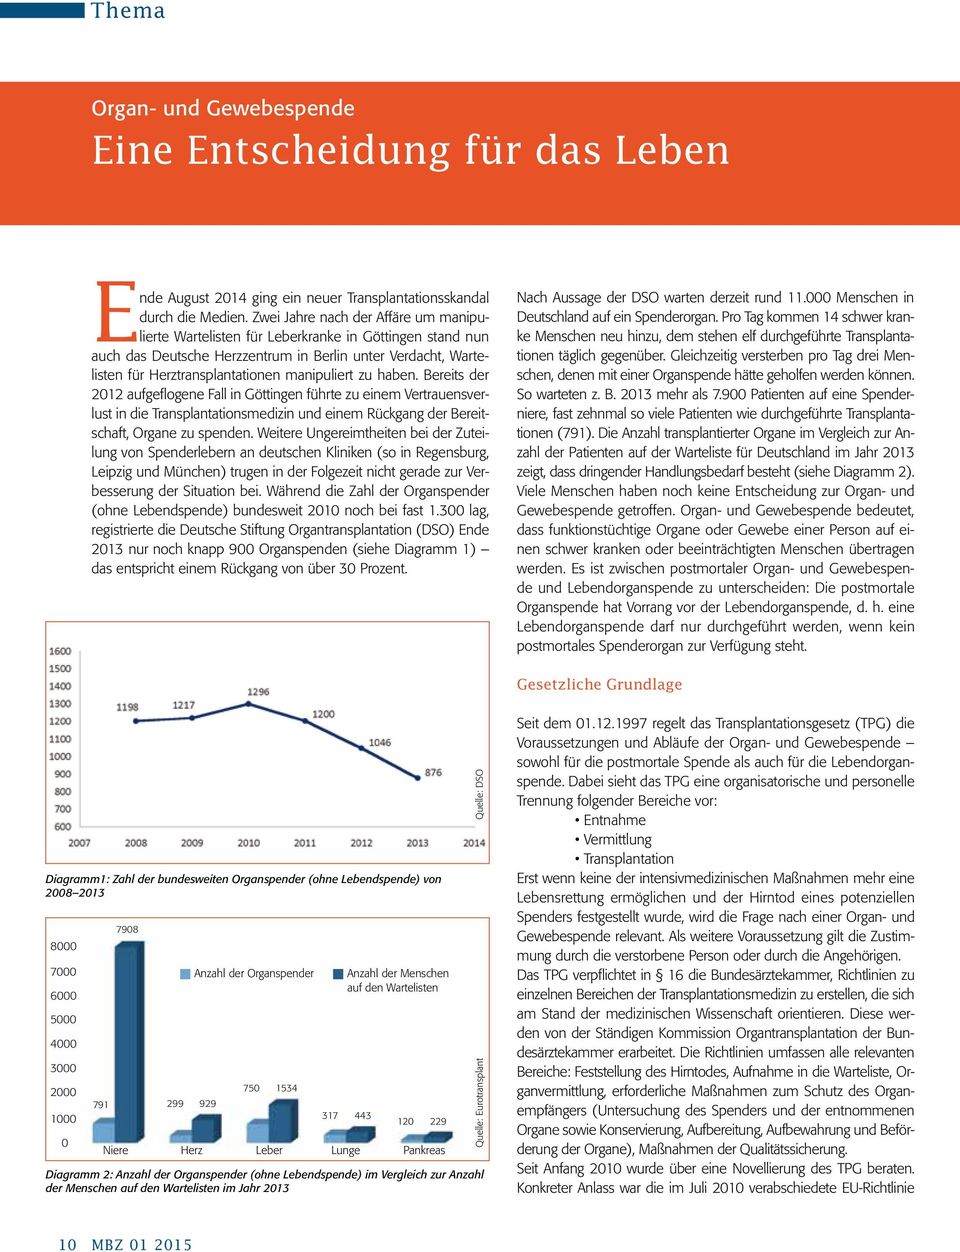 zu haben. Bereits der 2012 aufgeflogene Fall in Göttingen führte zu einem Vertrauensverlust in die Transplantationsmedizin und einem Rückgang der Bereitschaft, Organe zu spenden.